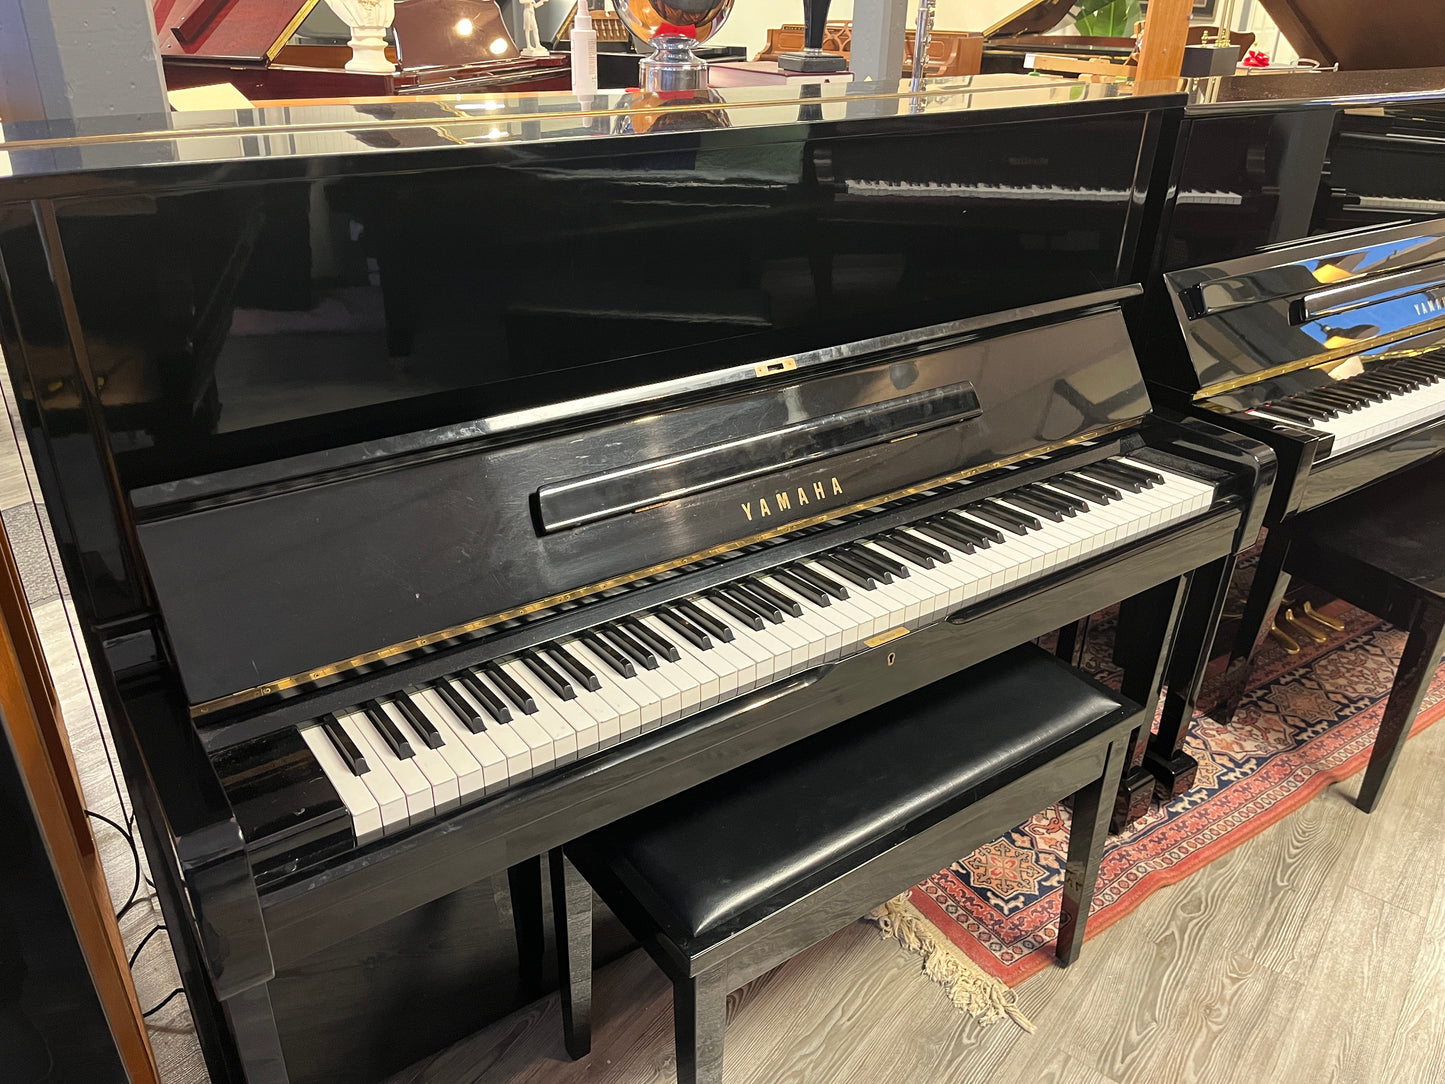 Yamaha Model U1 48” Professional Studio Piano (Polished Ebony)